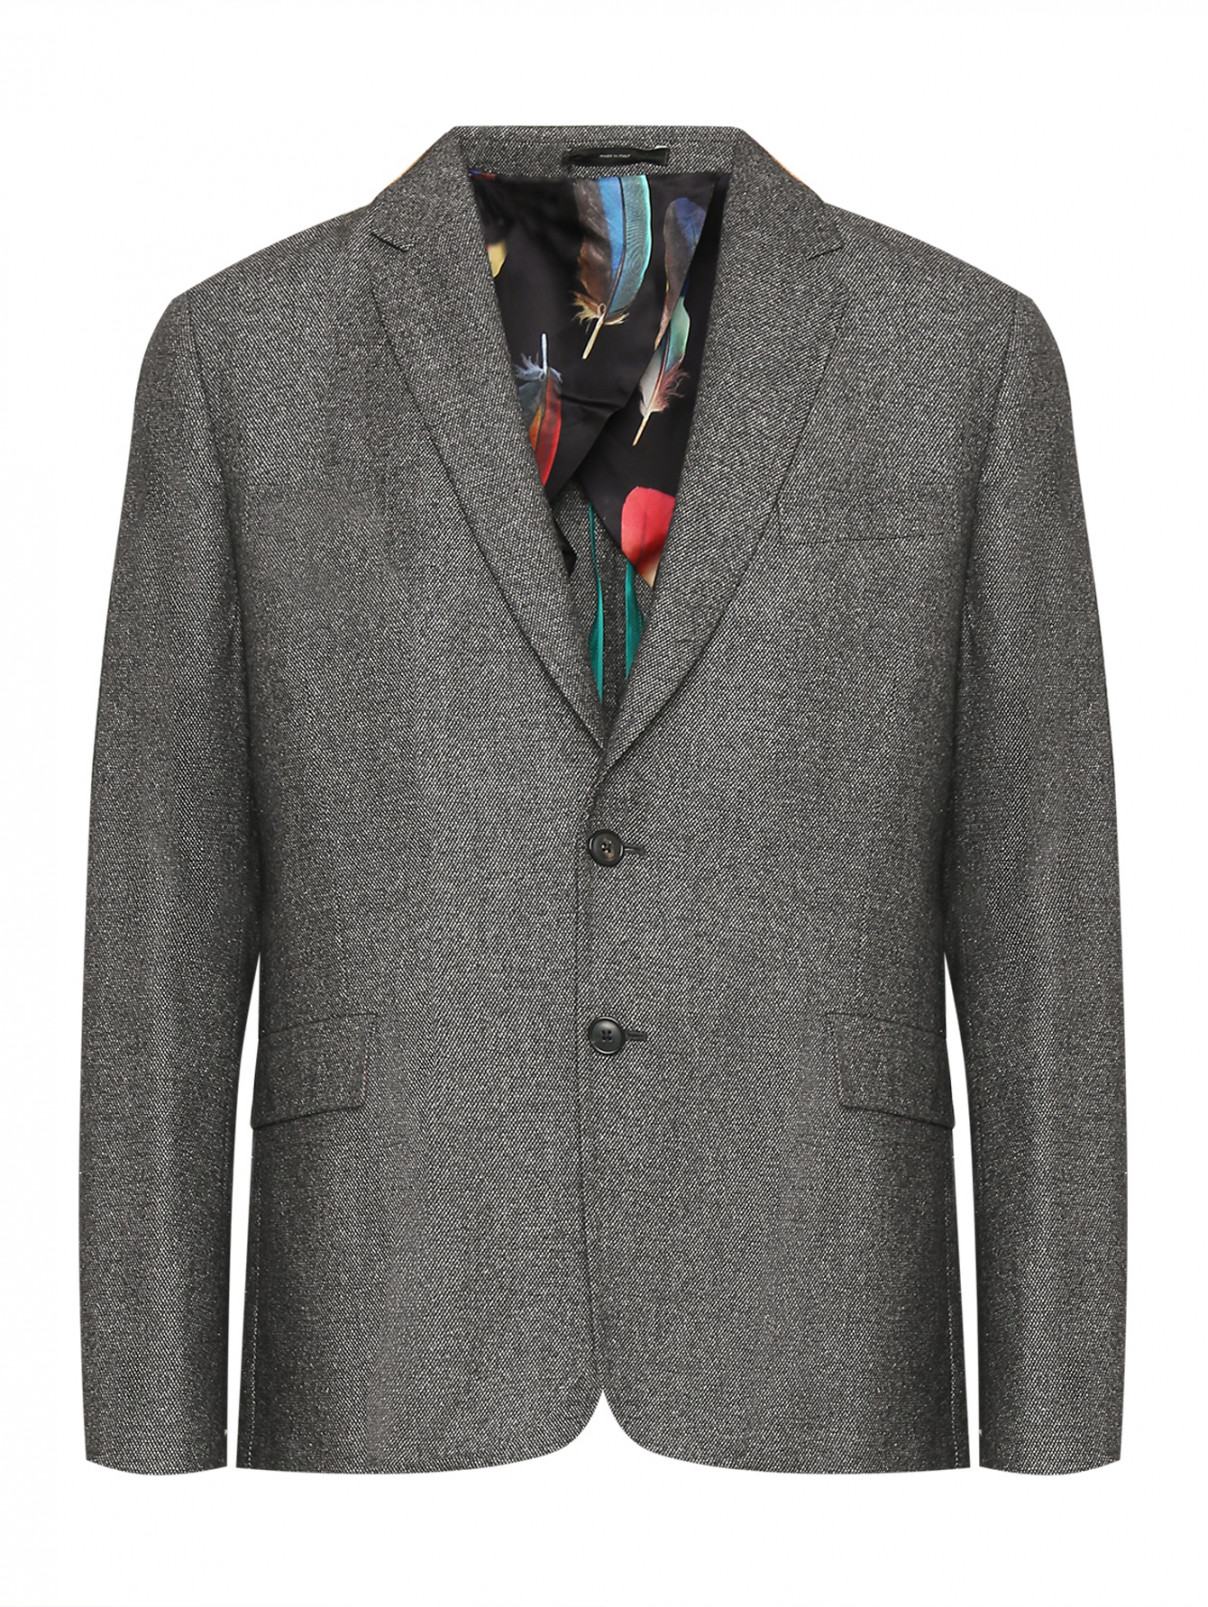 Пиджак однобортный из шерсти и шелка Paul Smith  –  Общий вид  – Цвет:  Серый